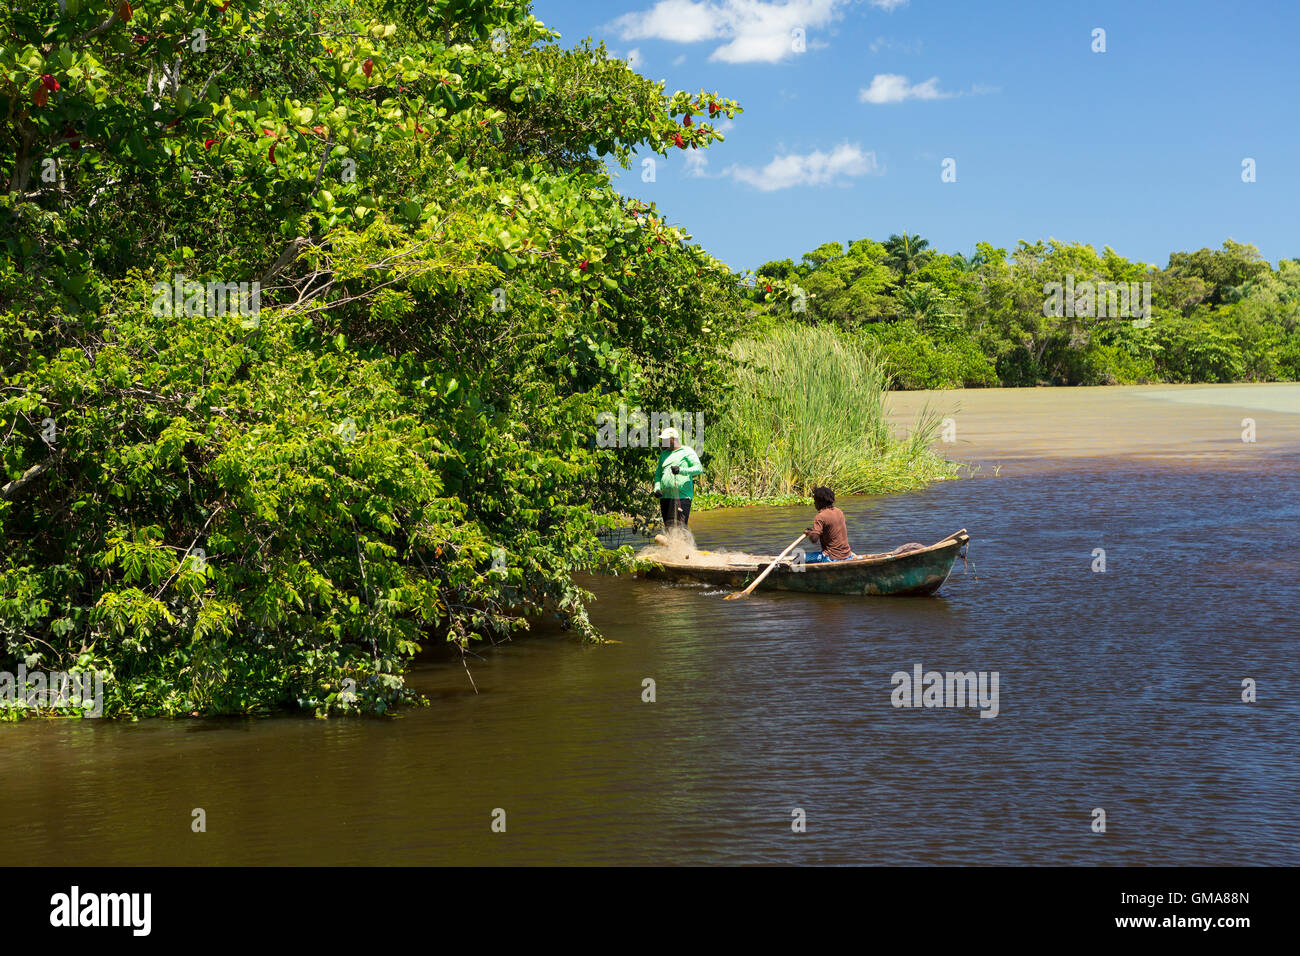 Repubblica Dominicana - i pescatori in canotto sul fiume Yasica Foto Stock